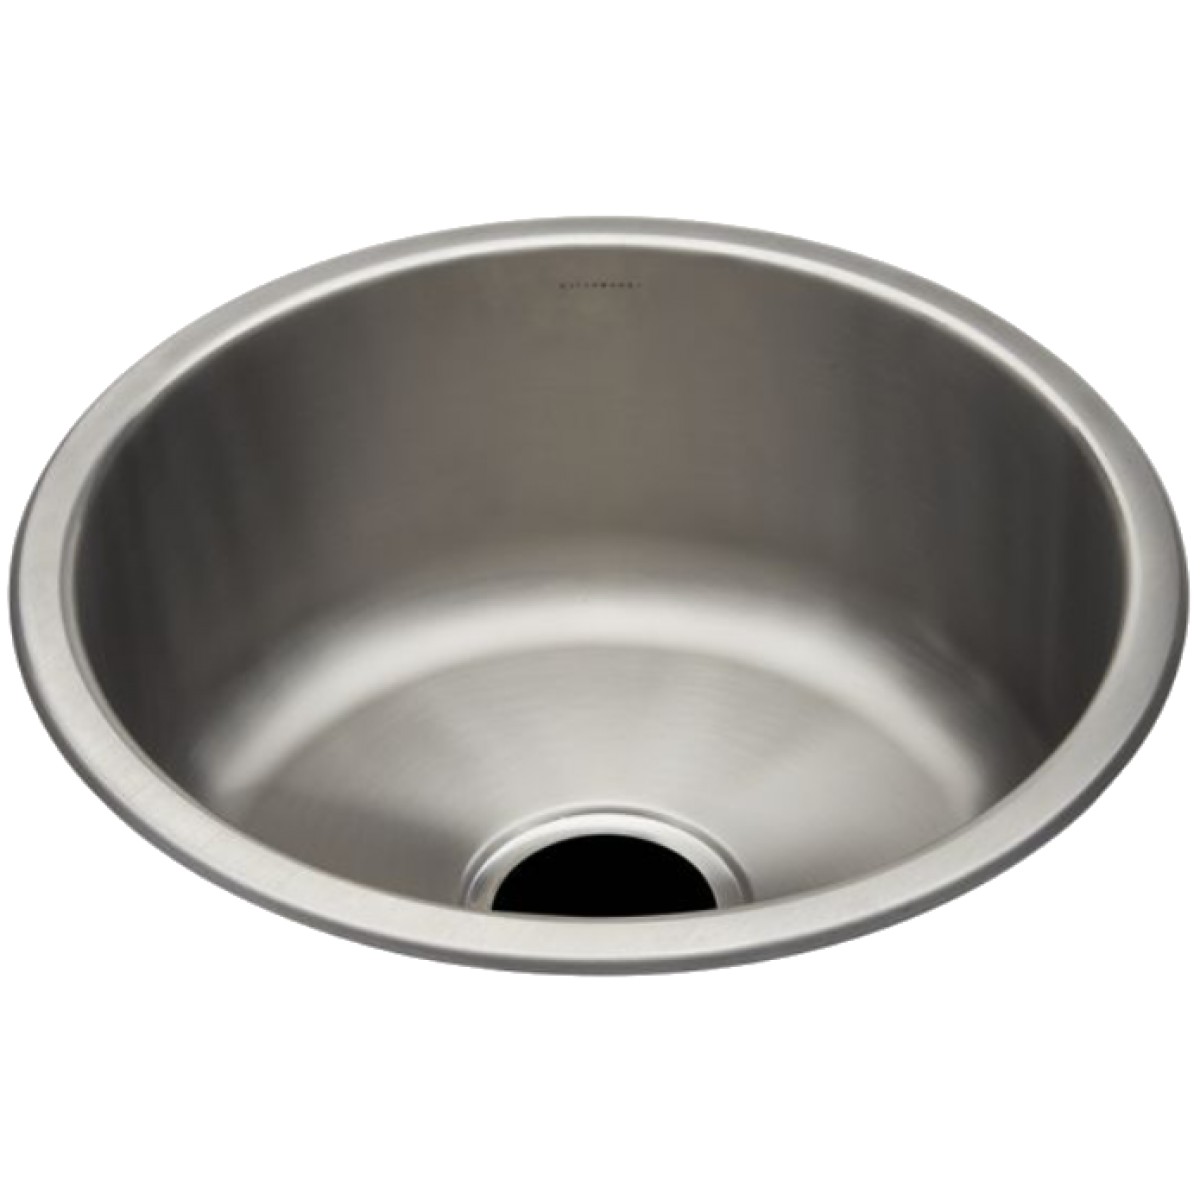 Kerr 16 7/8" Round Stainless Steel Undermount Prep Sink with Center Drain